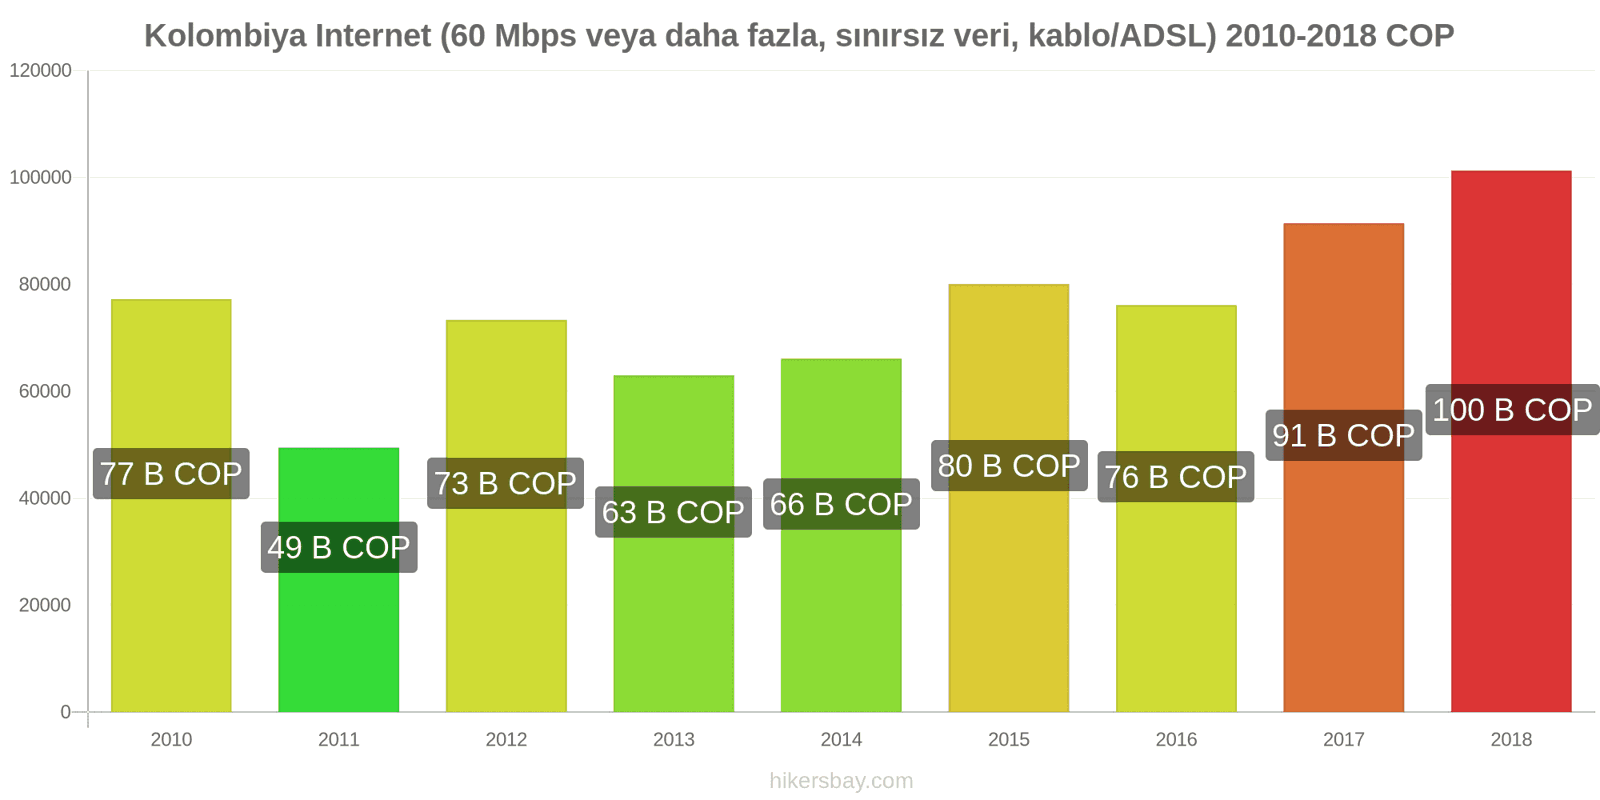 Kolombiya fiyat değişiklikleri İnternet (60 Mbps veya daha fazla, sınırsız veri, kablo/ADSL) hikersbay.com